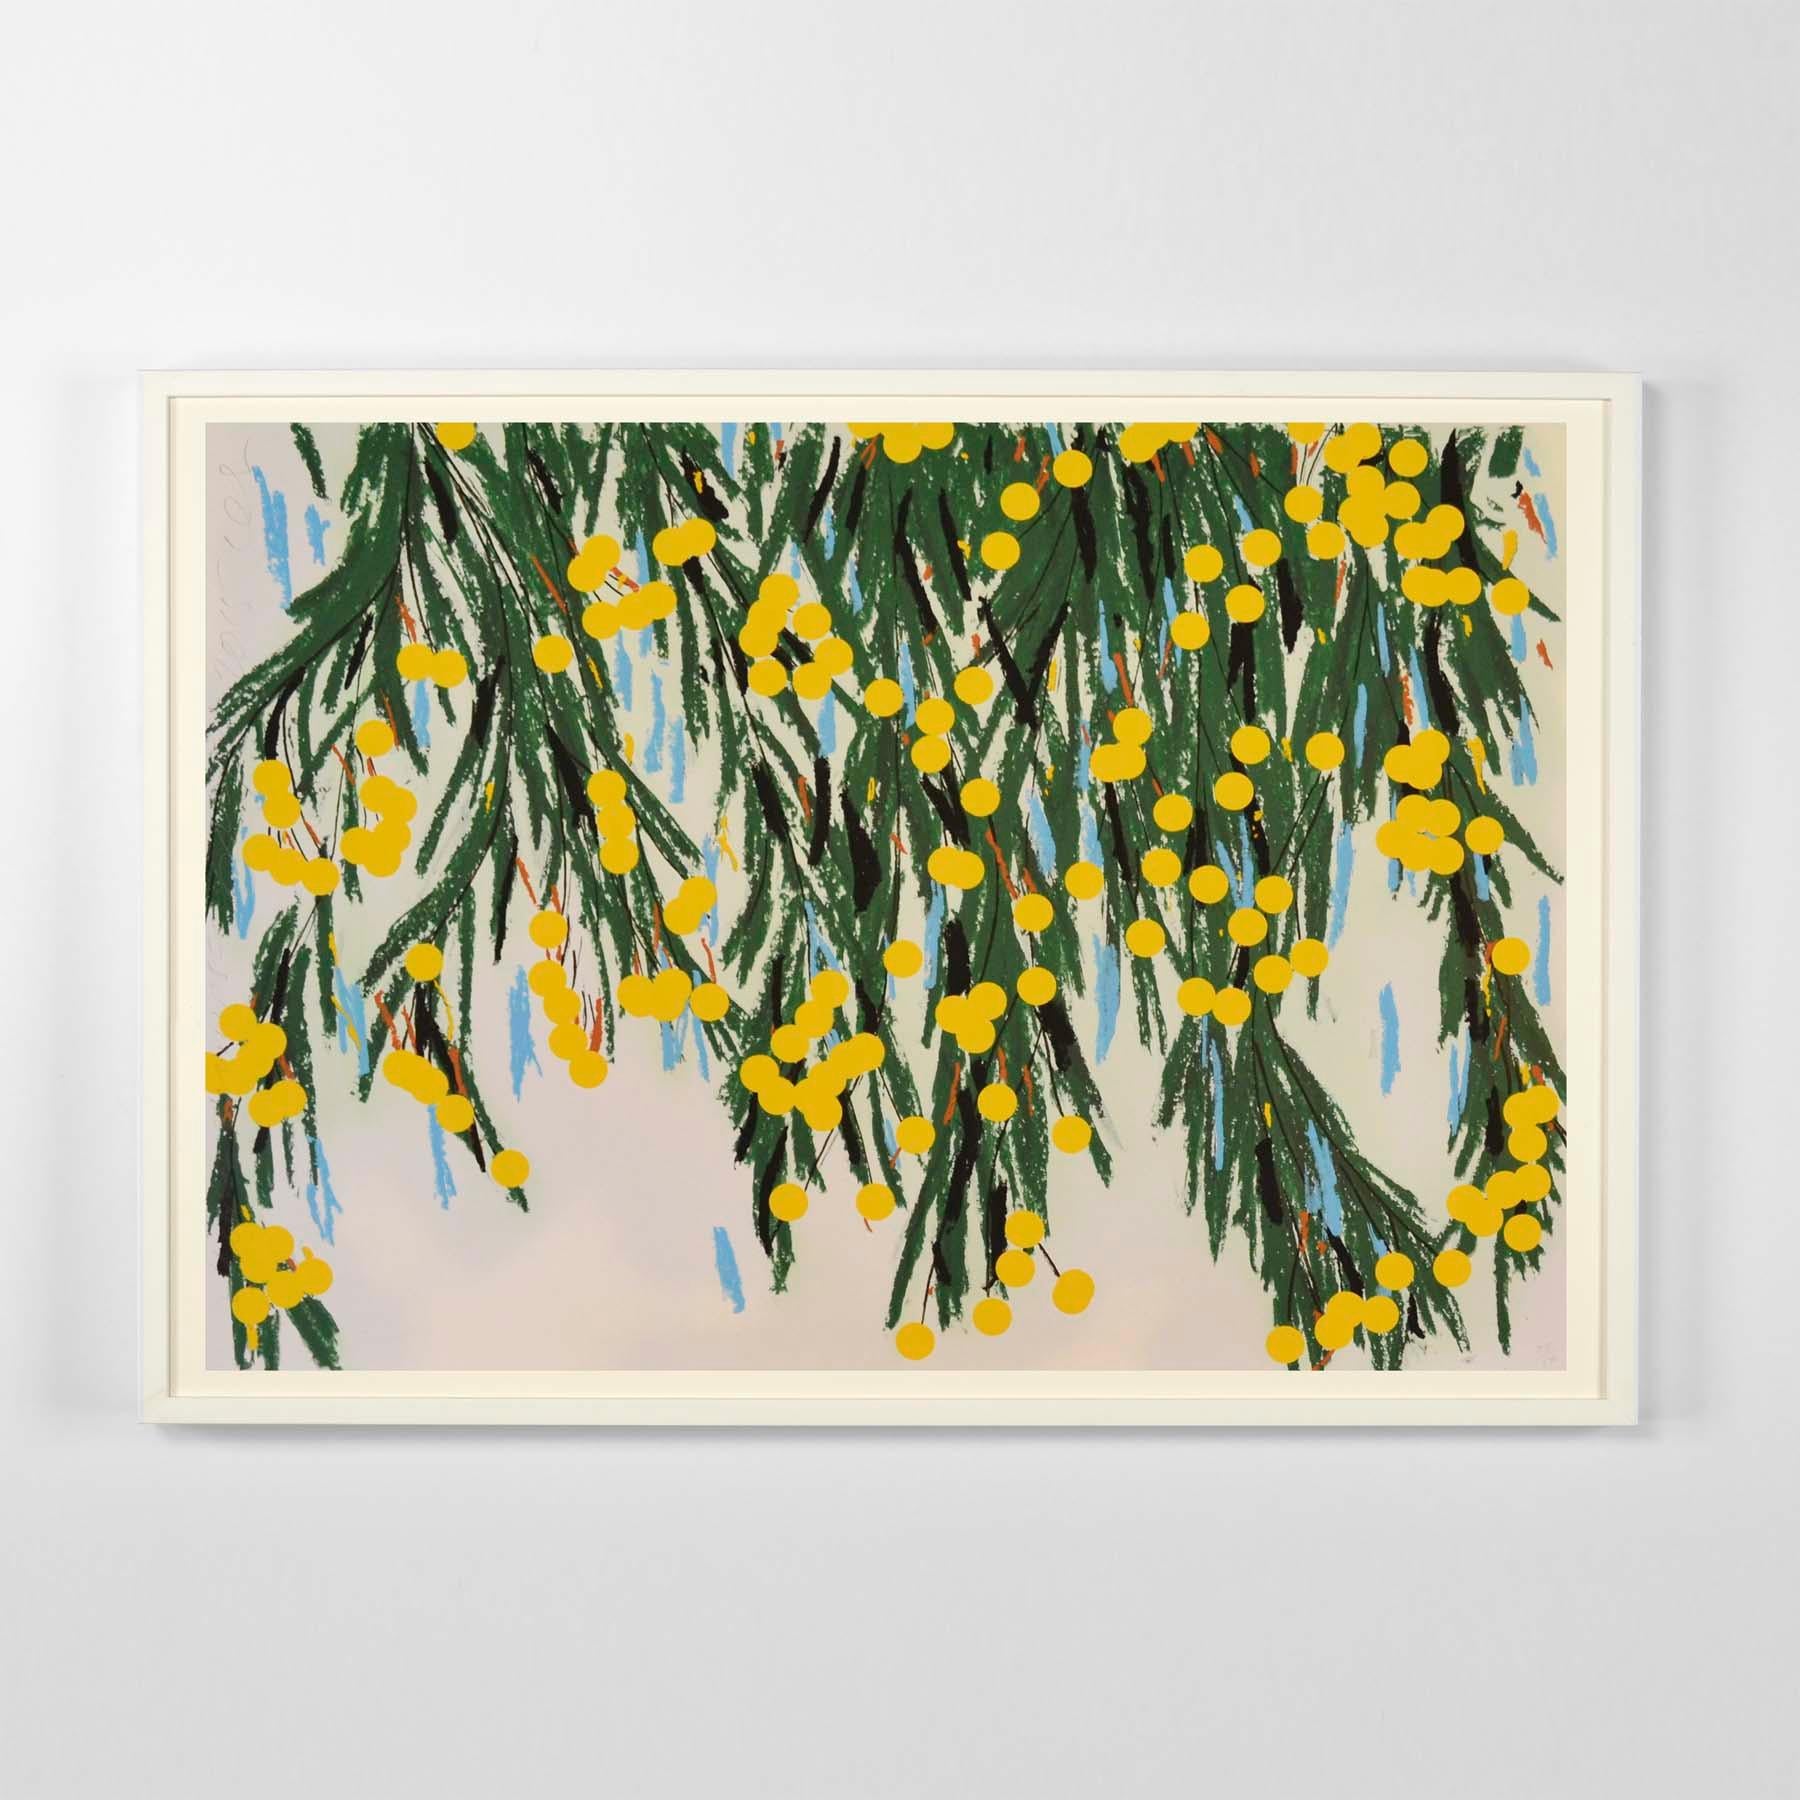 Donald Sultan, Gelbe Mimose, 23. Juli,
Siebdruck in Farben mit gelber Beflockung auf 4-lagigem Museumskarton. 
Auflage: 50 Stück. 
81.3 x 114.3 cm (32.2 x 45.5 in)
Signiert, datiert, nummeriert und betitelt, begleitet von einem